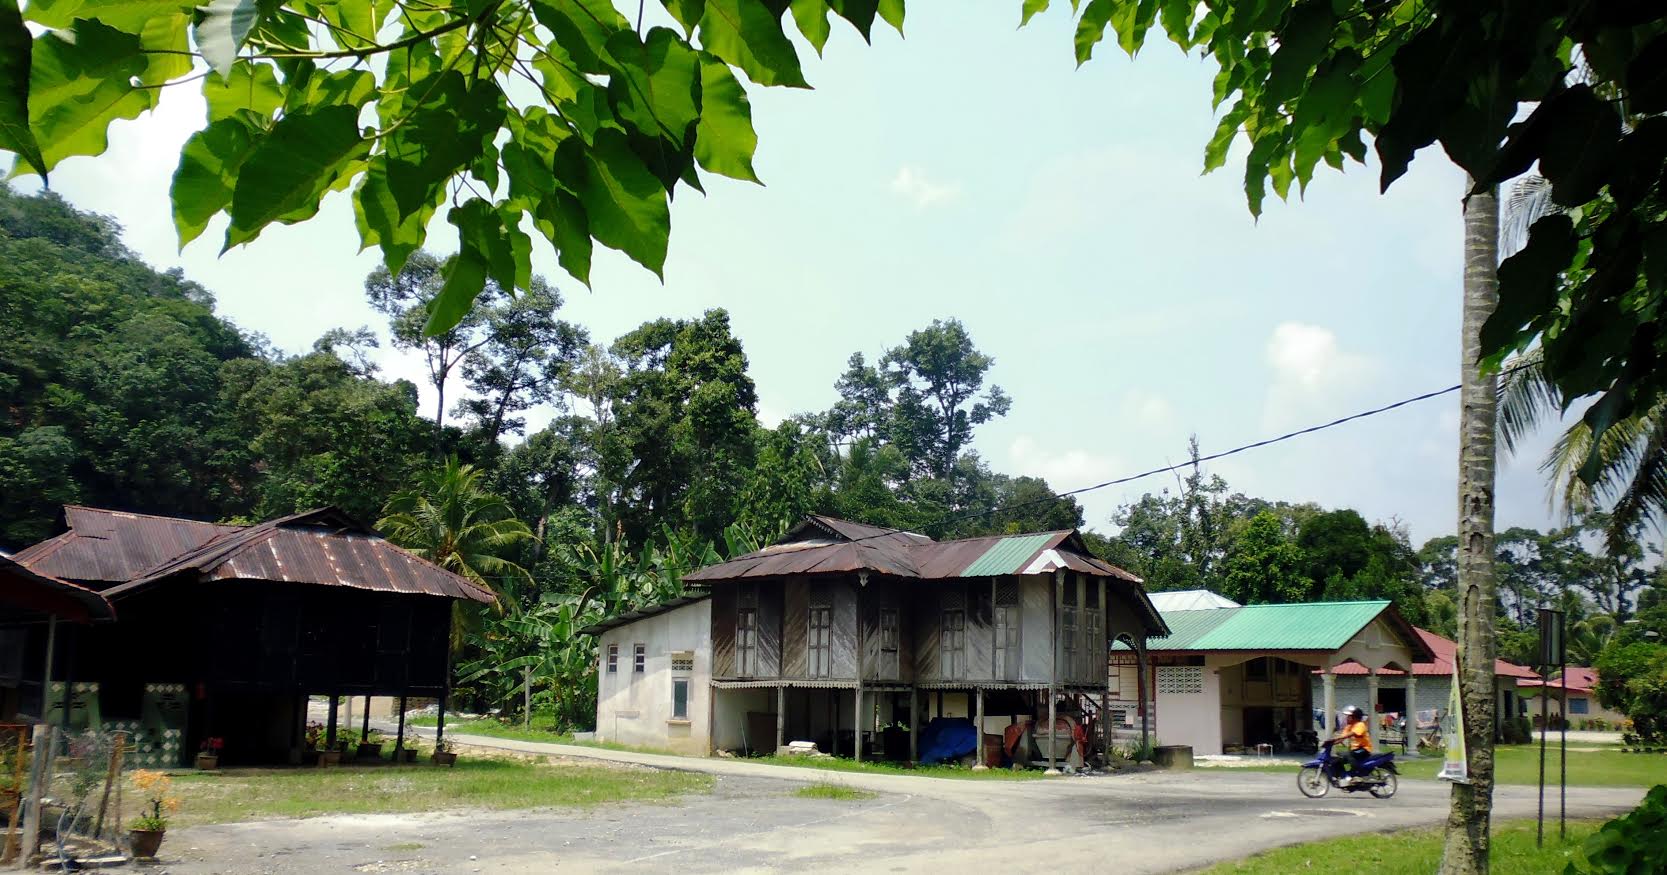 Kampung Mandah, Perak